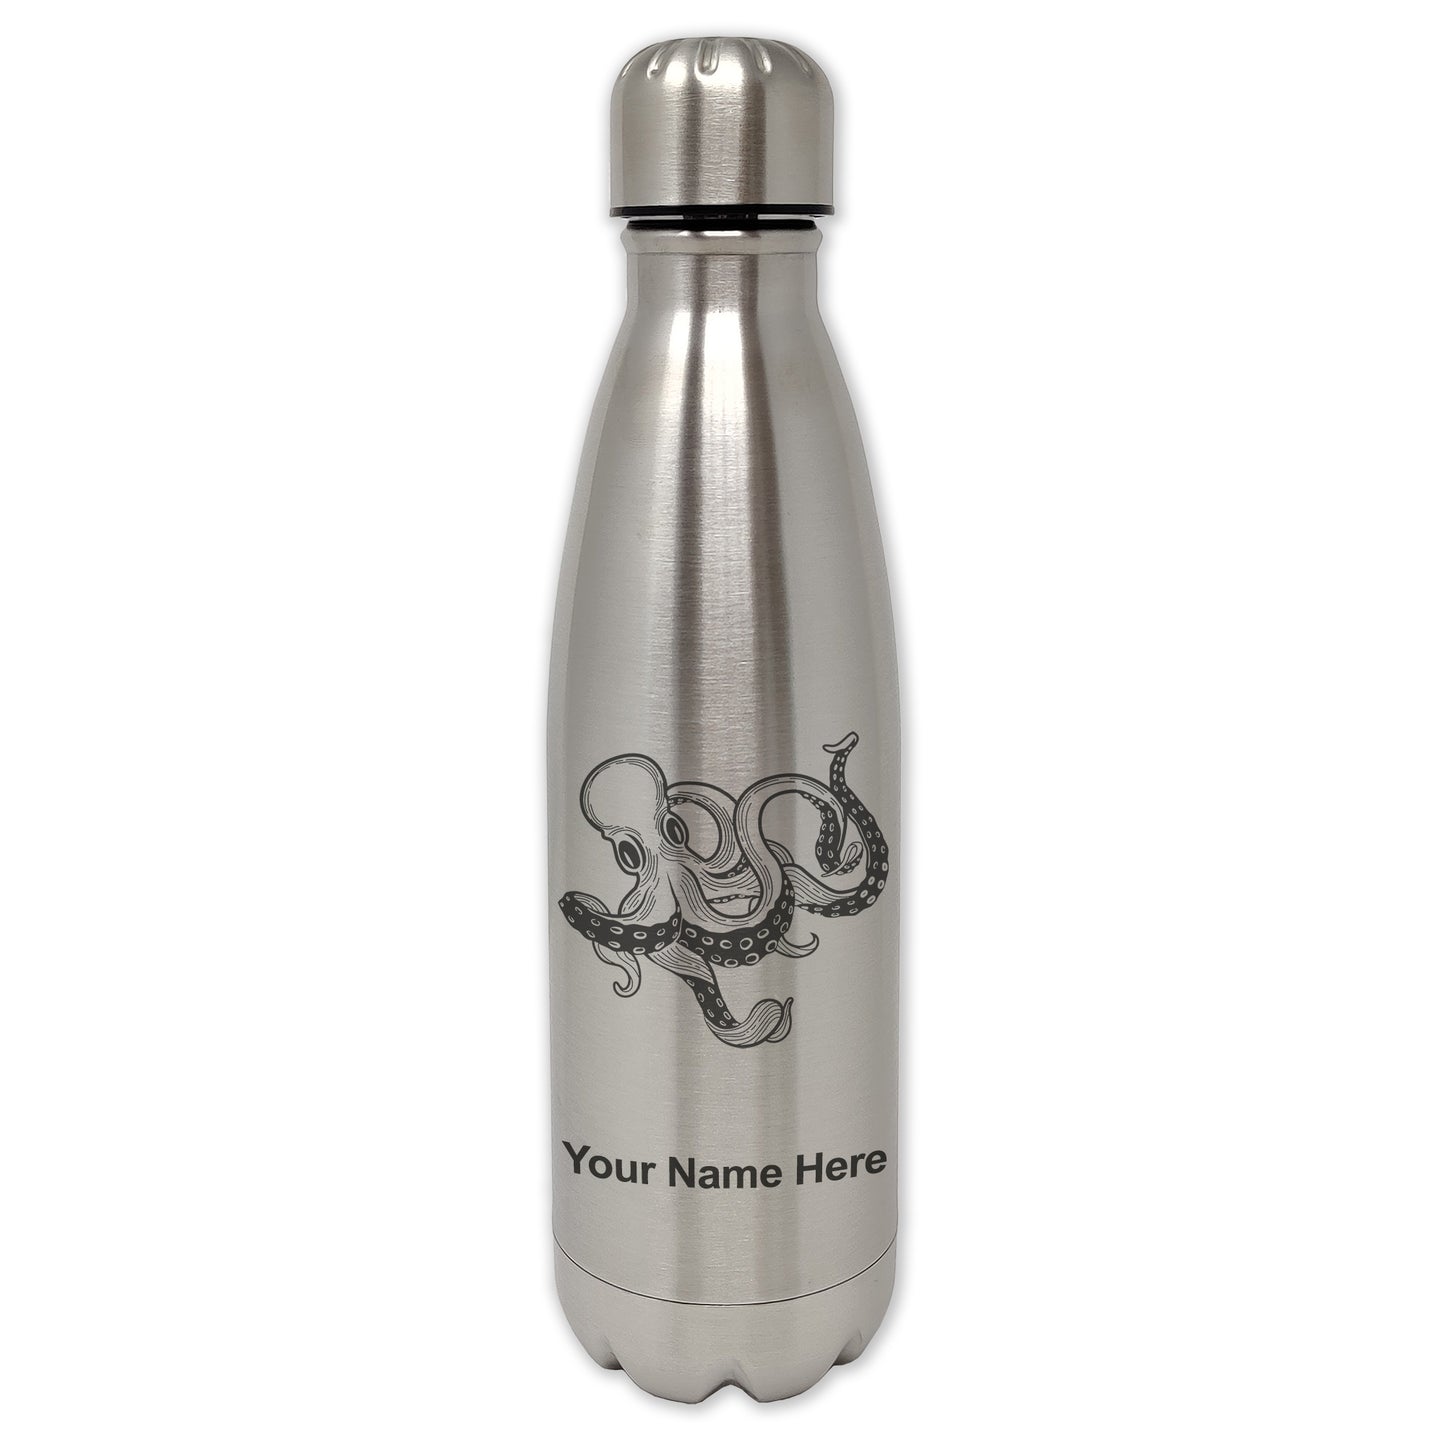 LaserGram Single Wall Water Bottle, Kraken, Personalized Engraving Included